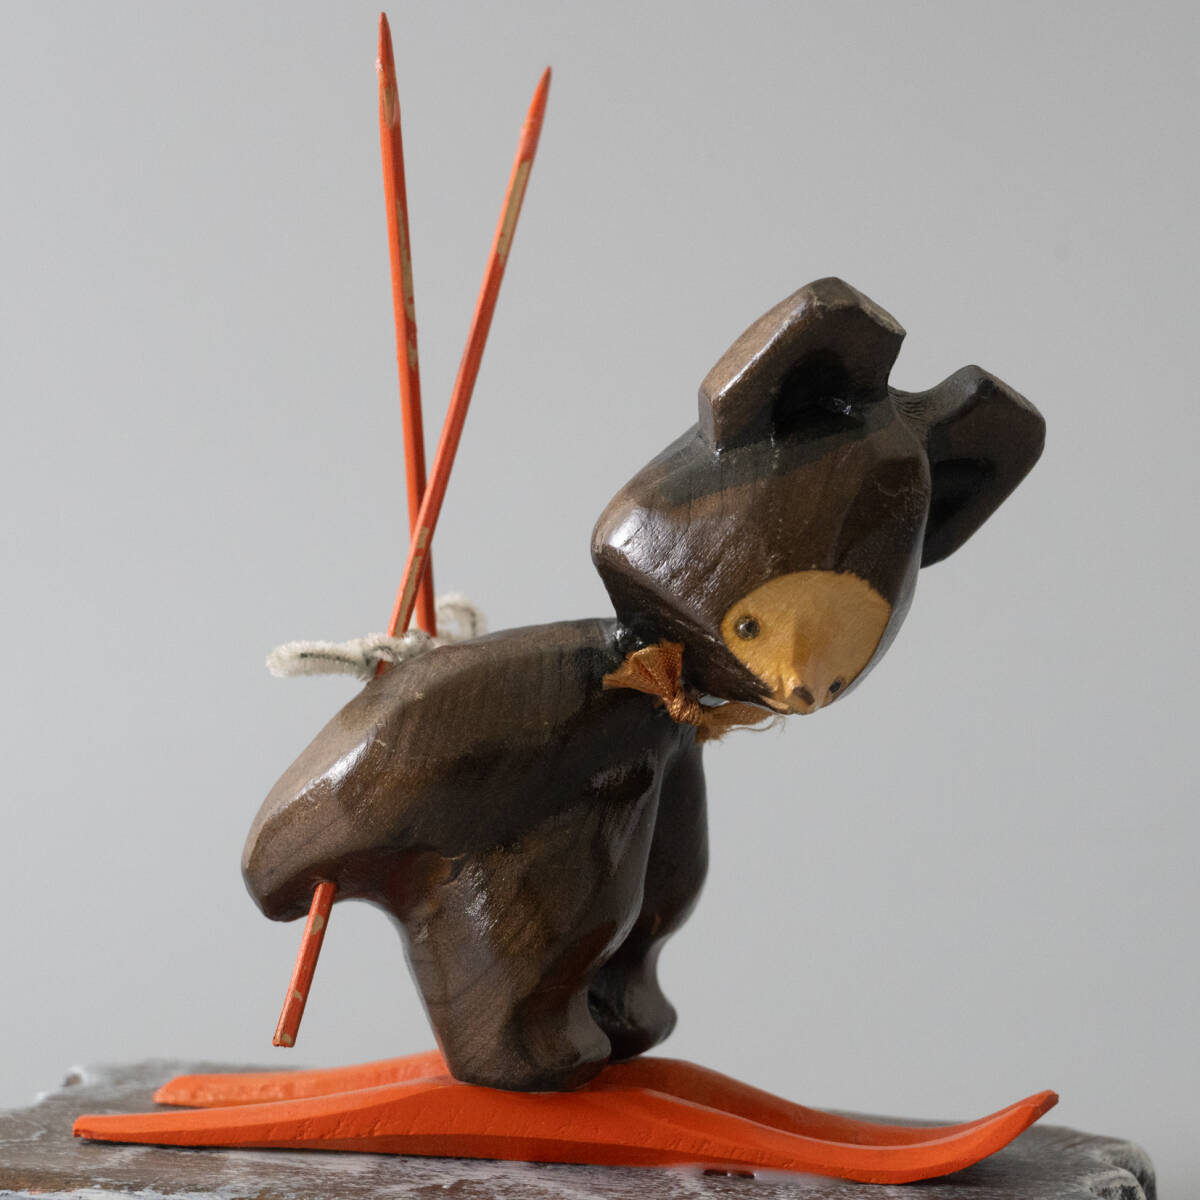 木彫の熊 北海道 民芸品 木彫り熊 木製彫刻 飾り オブジェ 置物 民藝 可愛い 木彫熊 スキー_画像2